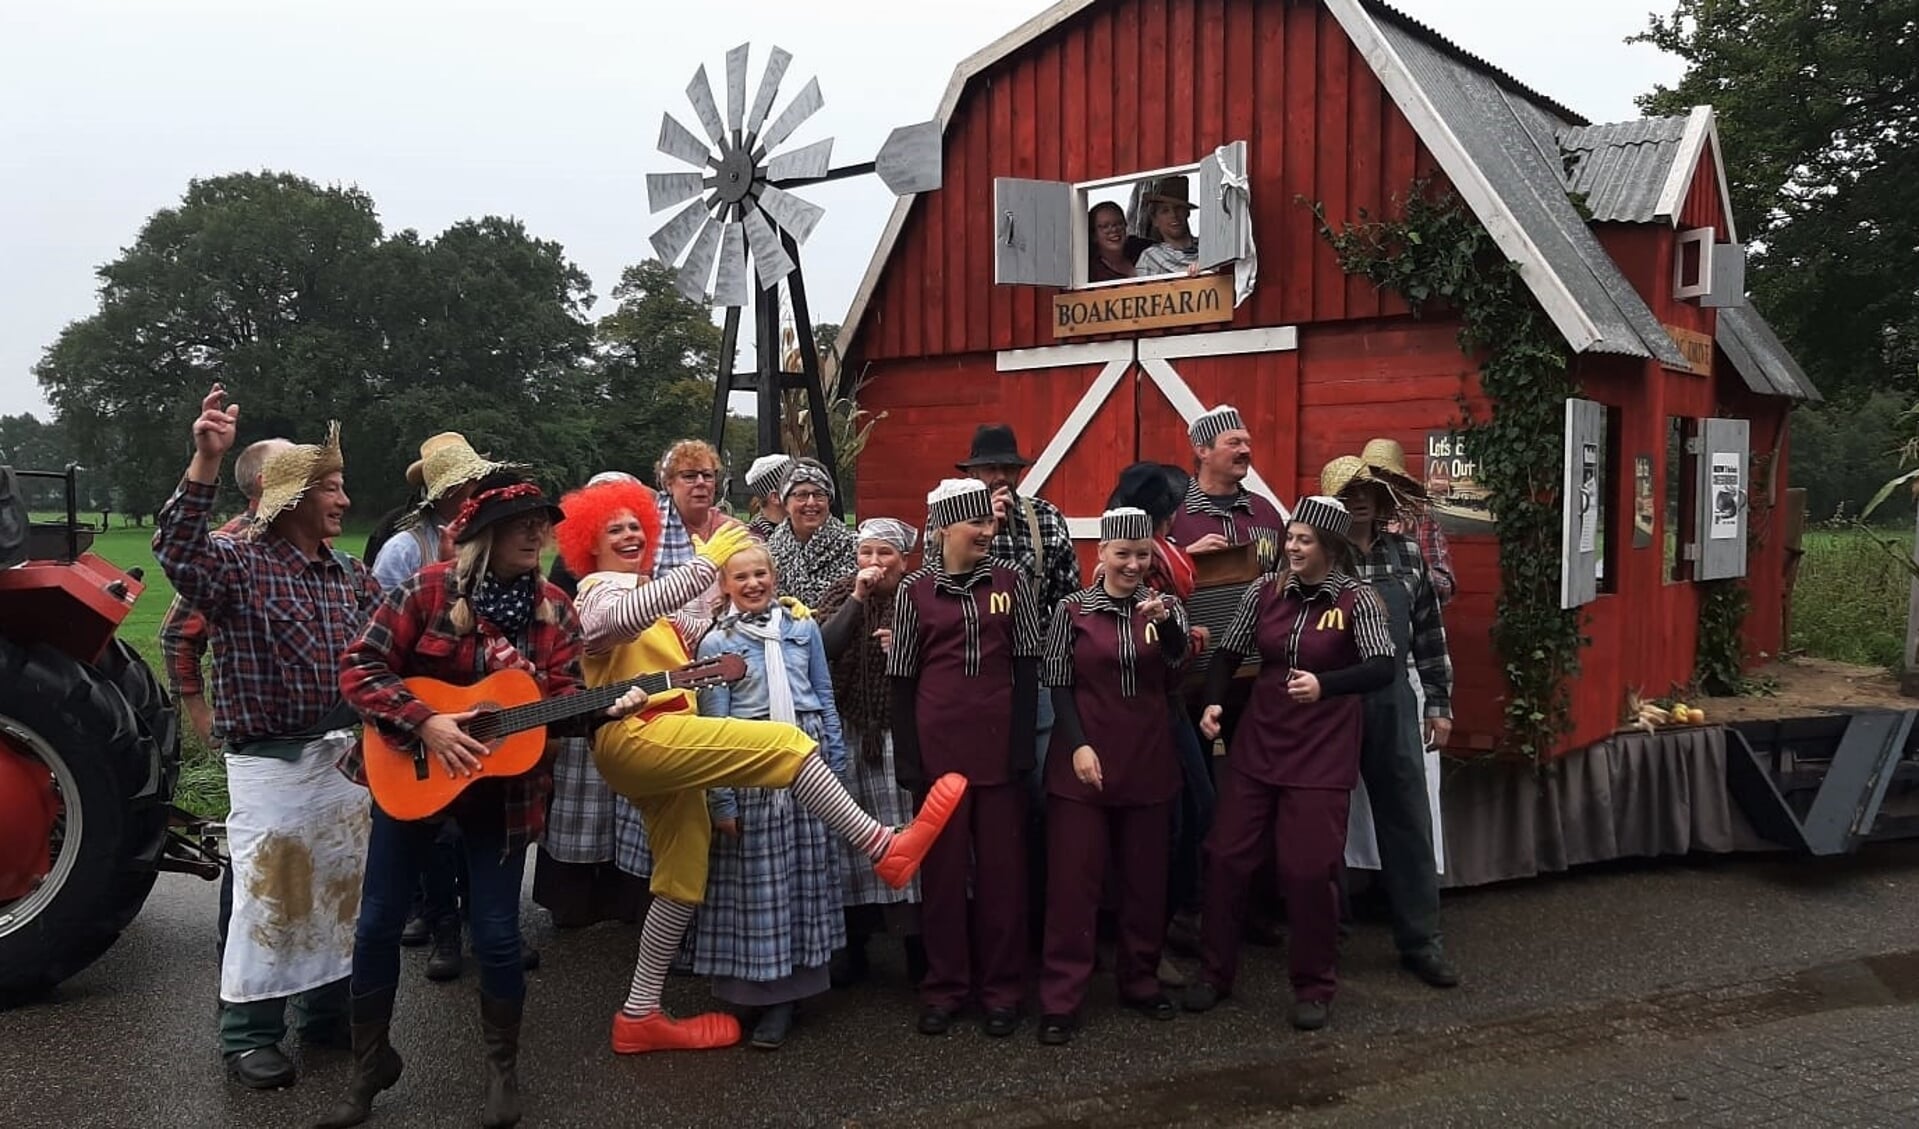 Bouwgroep de Boakermark bij hun praalwagen Old Mac Donald in 2019 waar ze de eerste prijs mee wonnen. Foto: Bouwgroep Boakermark